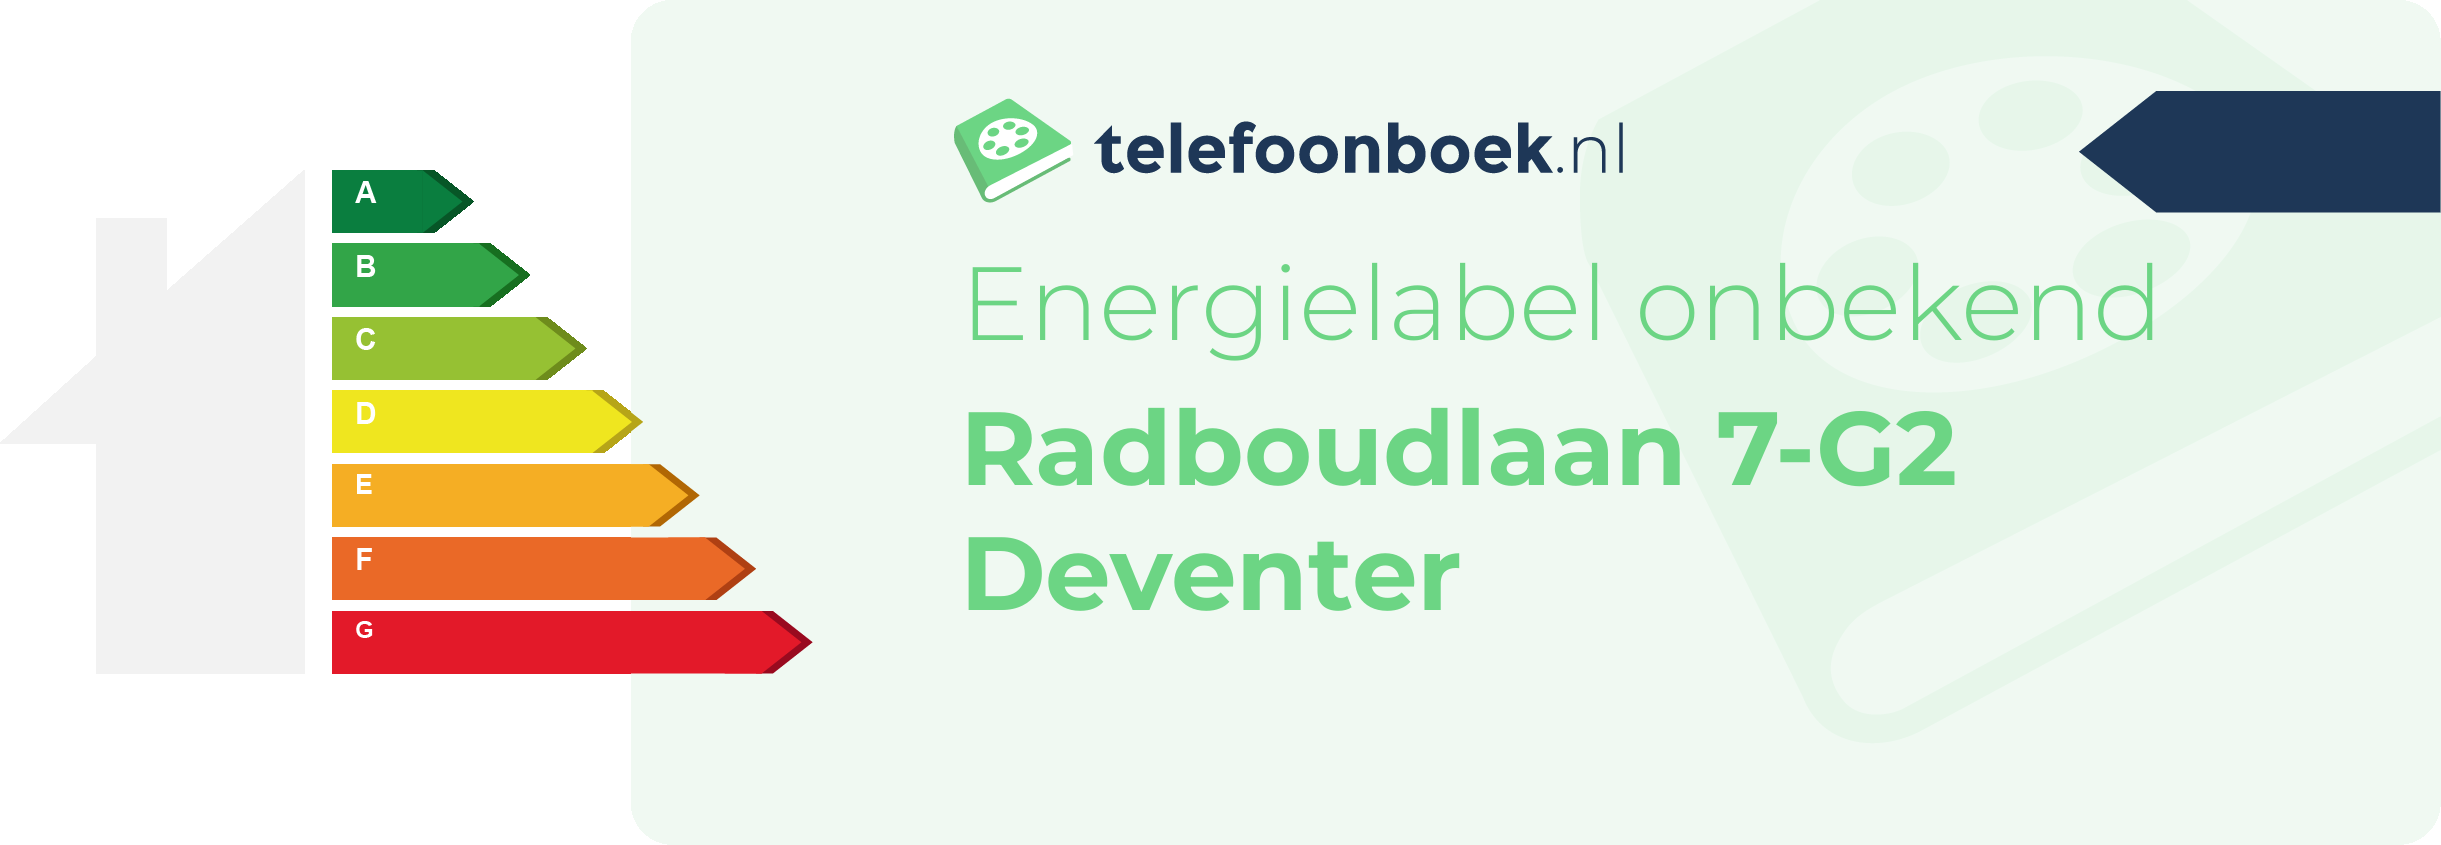 Energielabel Radboudlaan 7-G2 Deventer